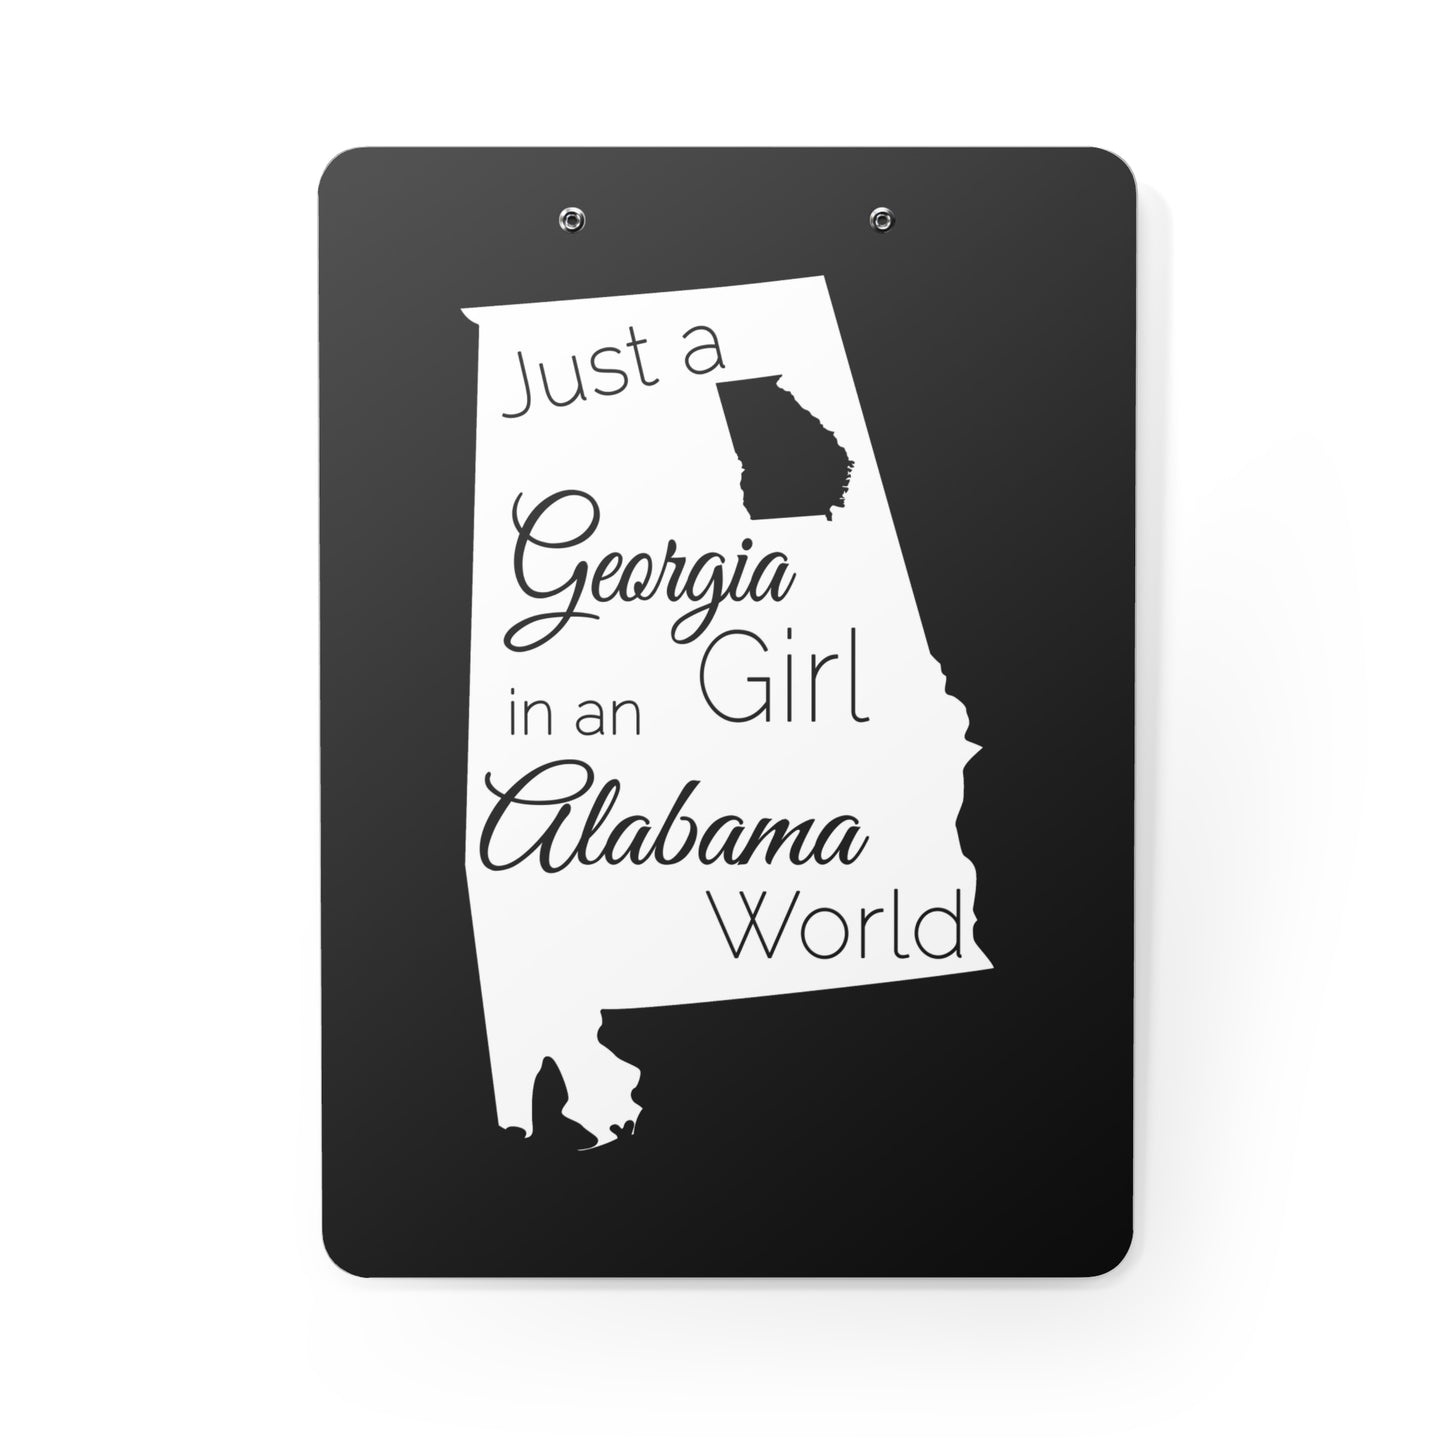 Just a Georgia Girl in an Alabama World Clipboard